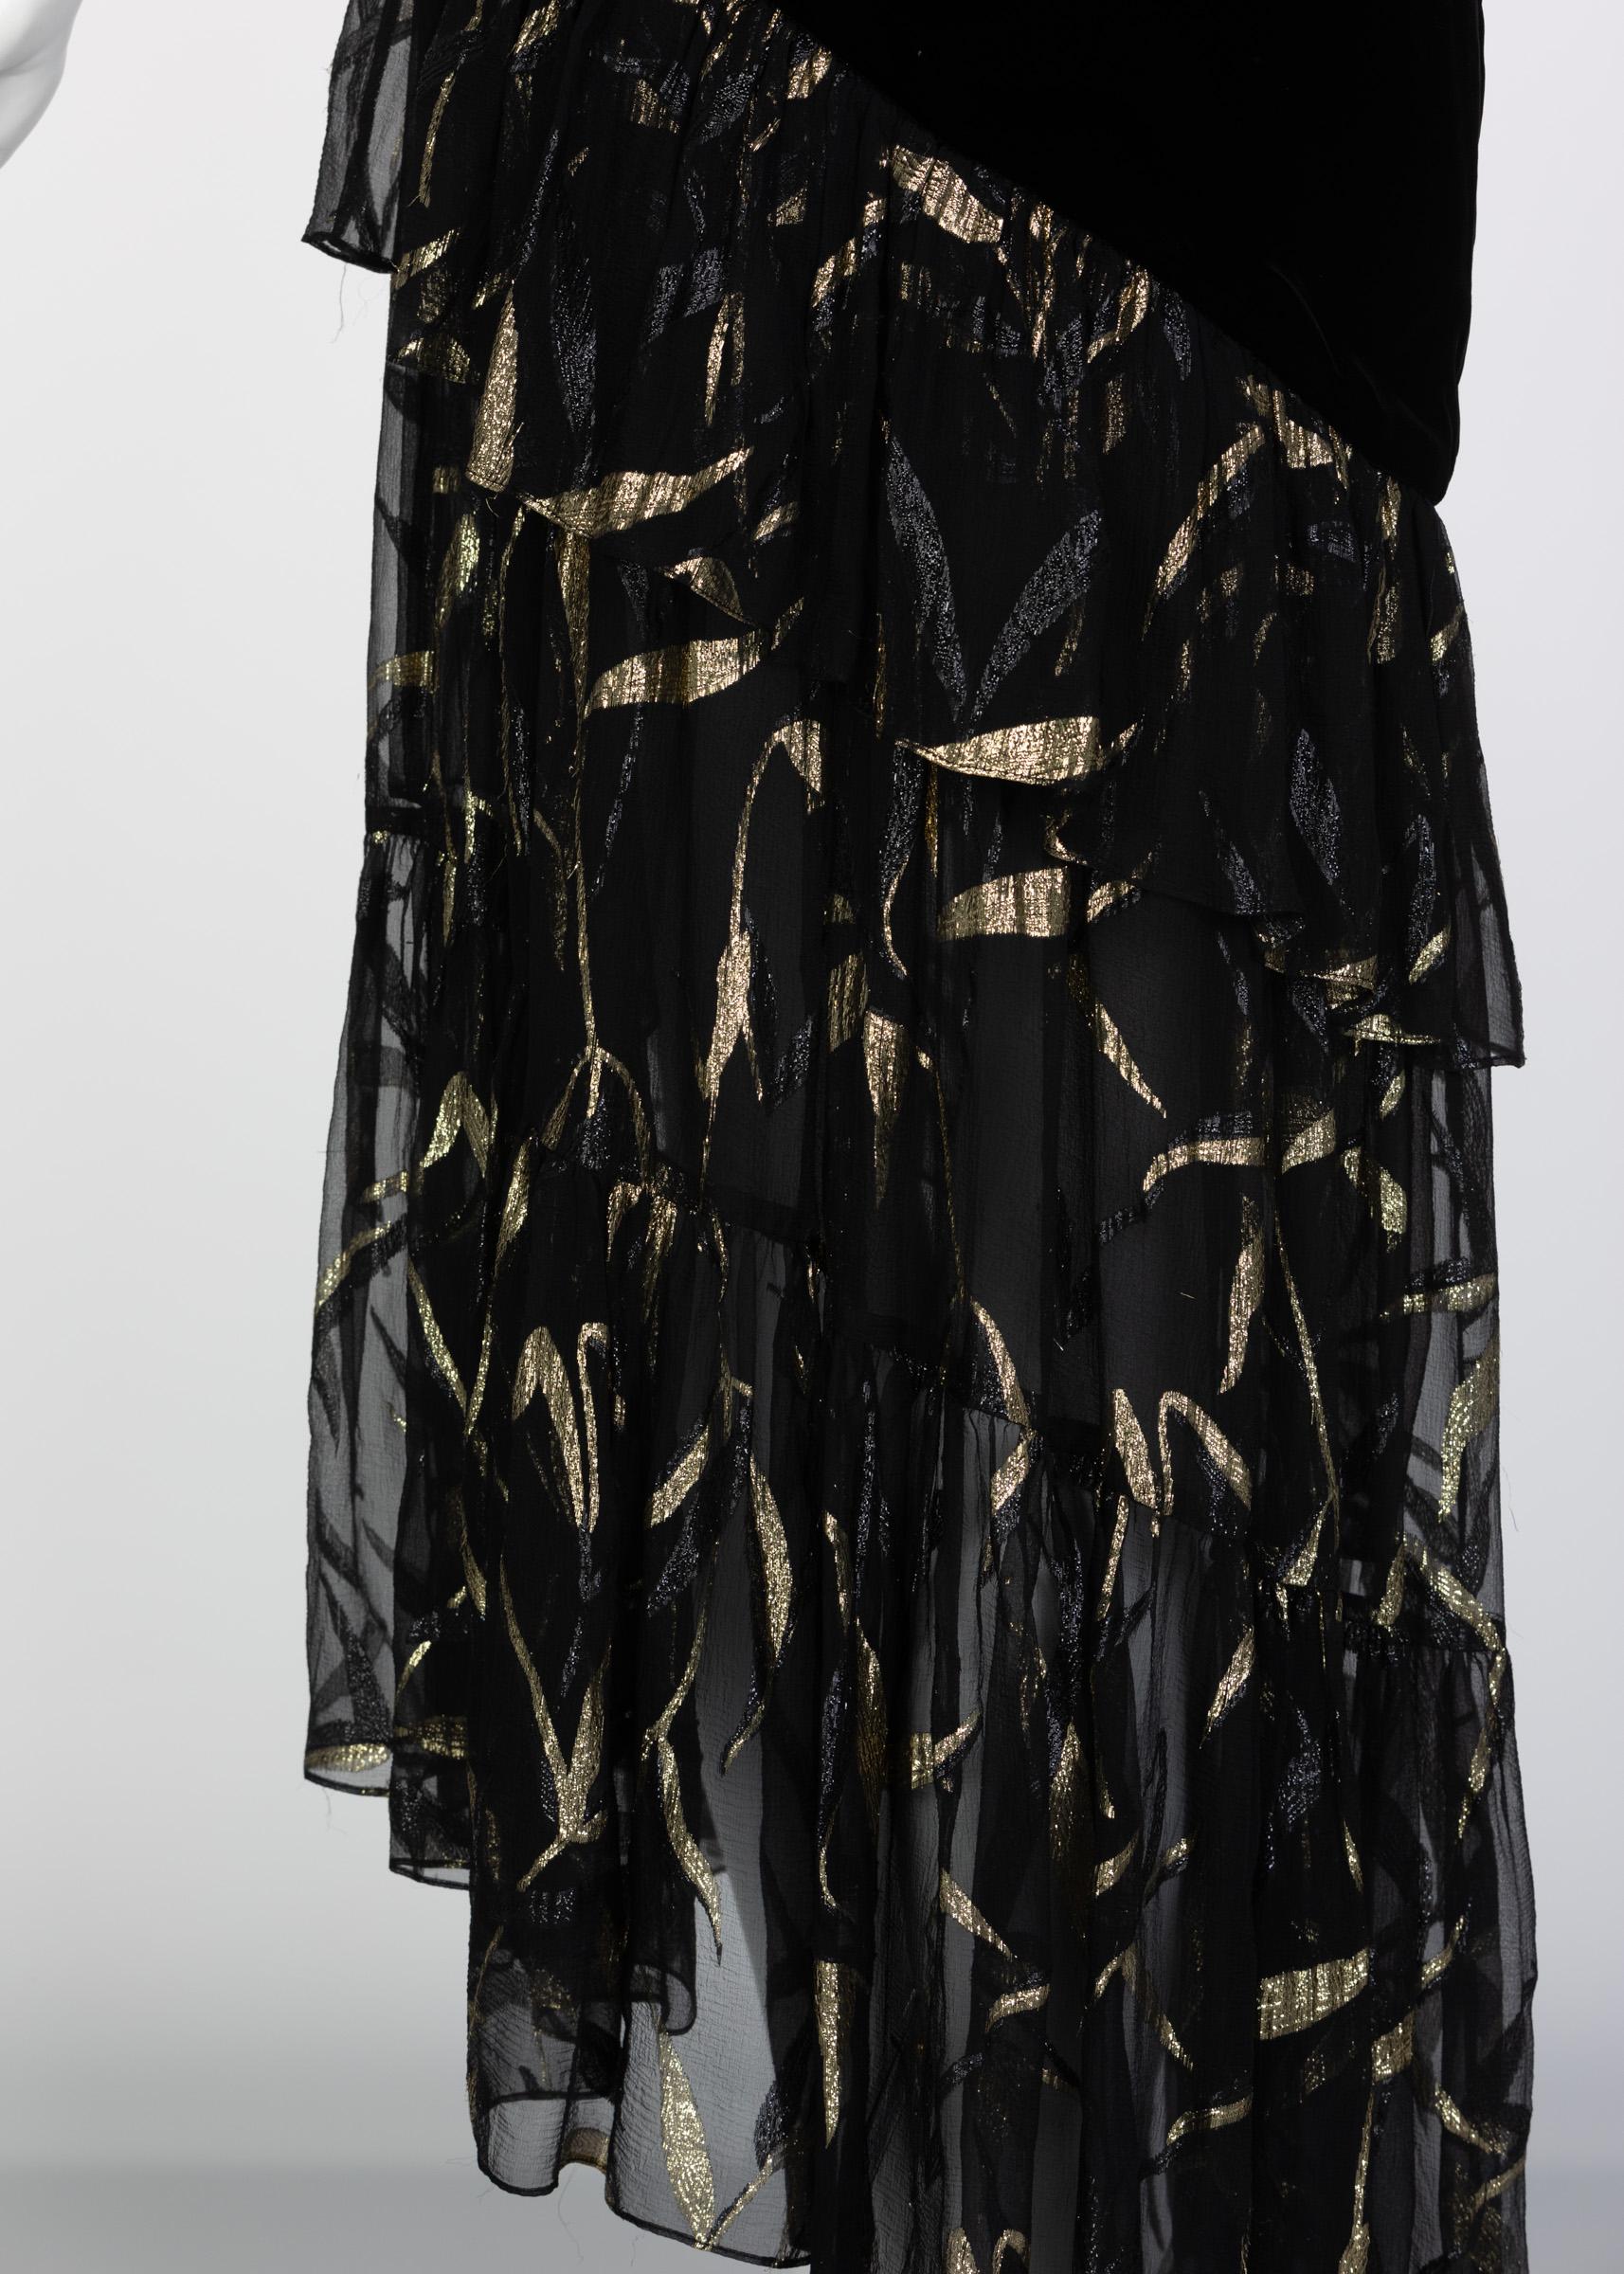 Saint Laurent YSL One shoulder Black Velvet Metallic Layered Dress, 1980s 3